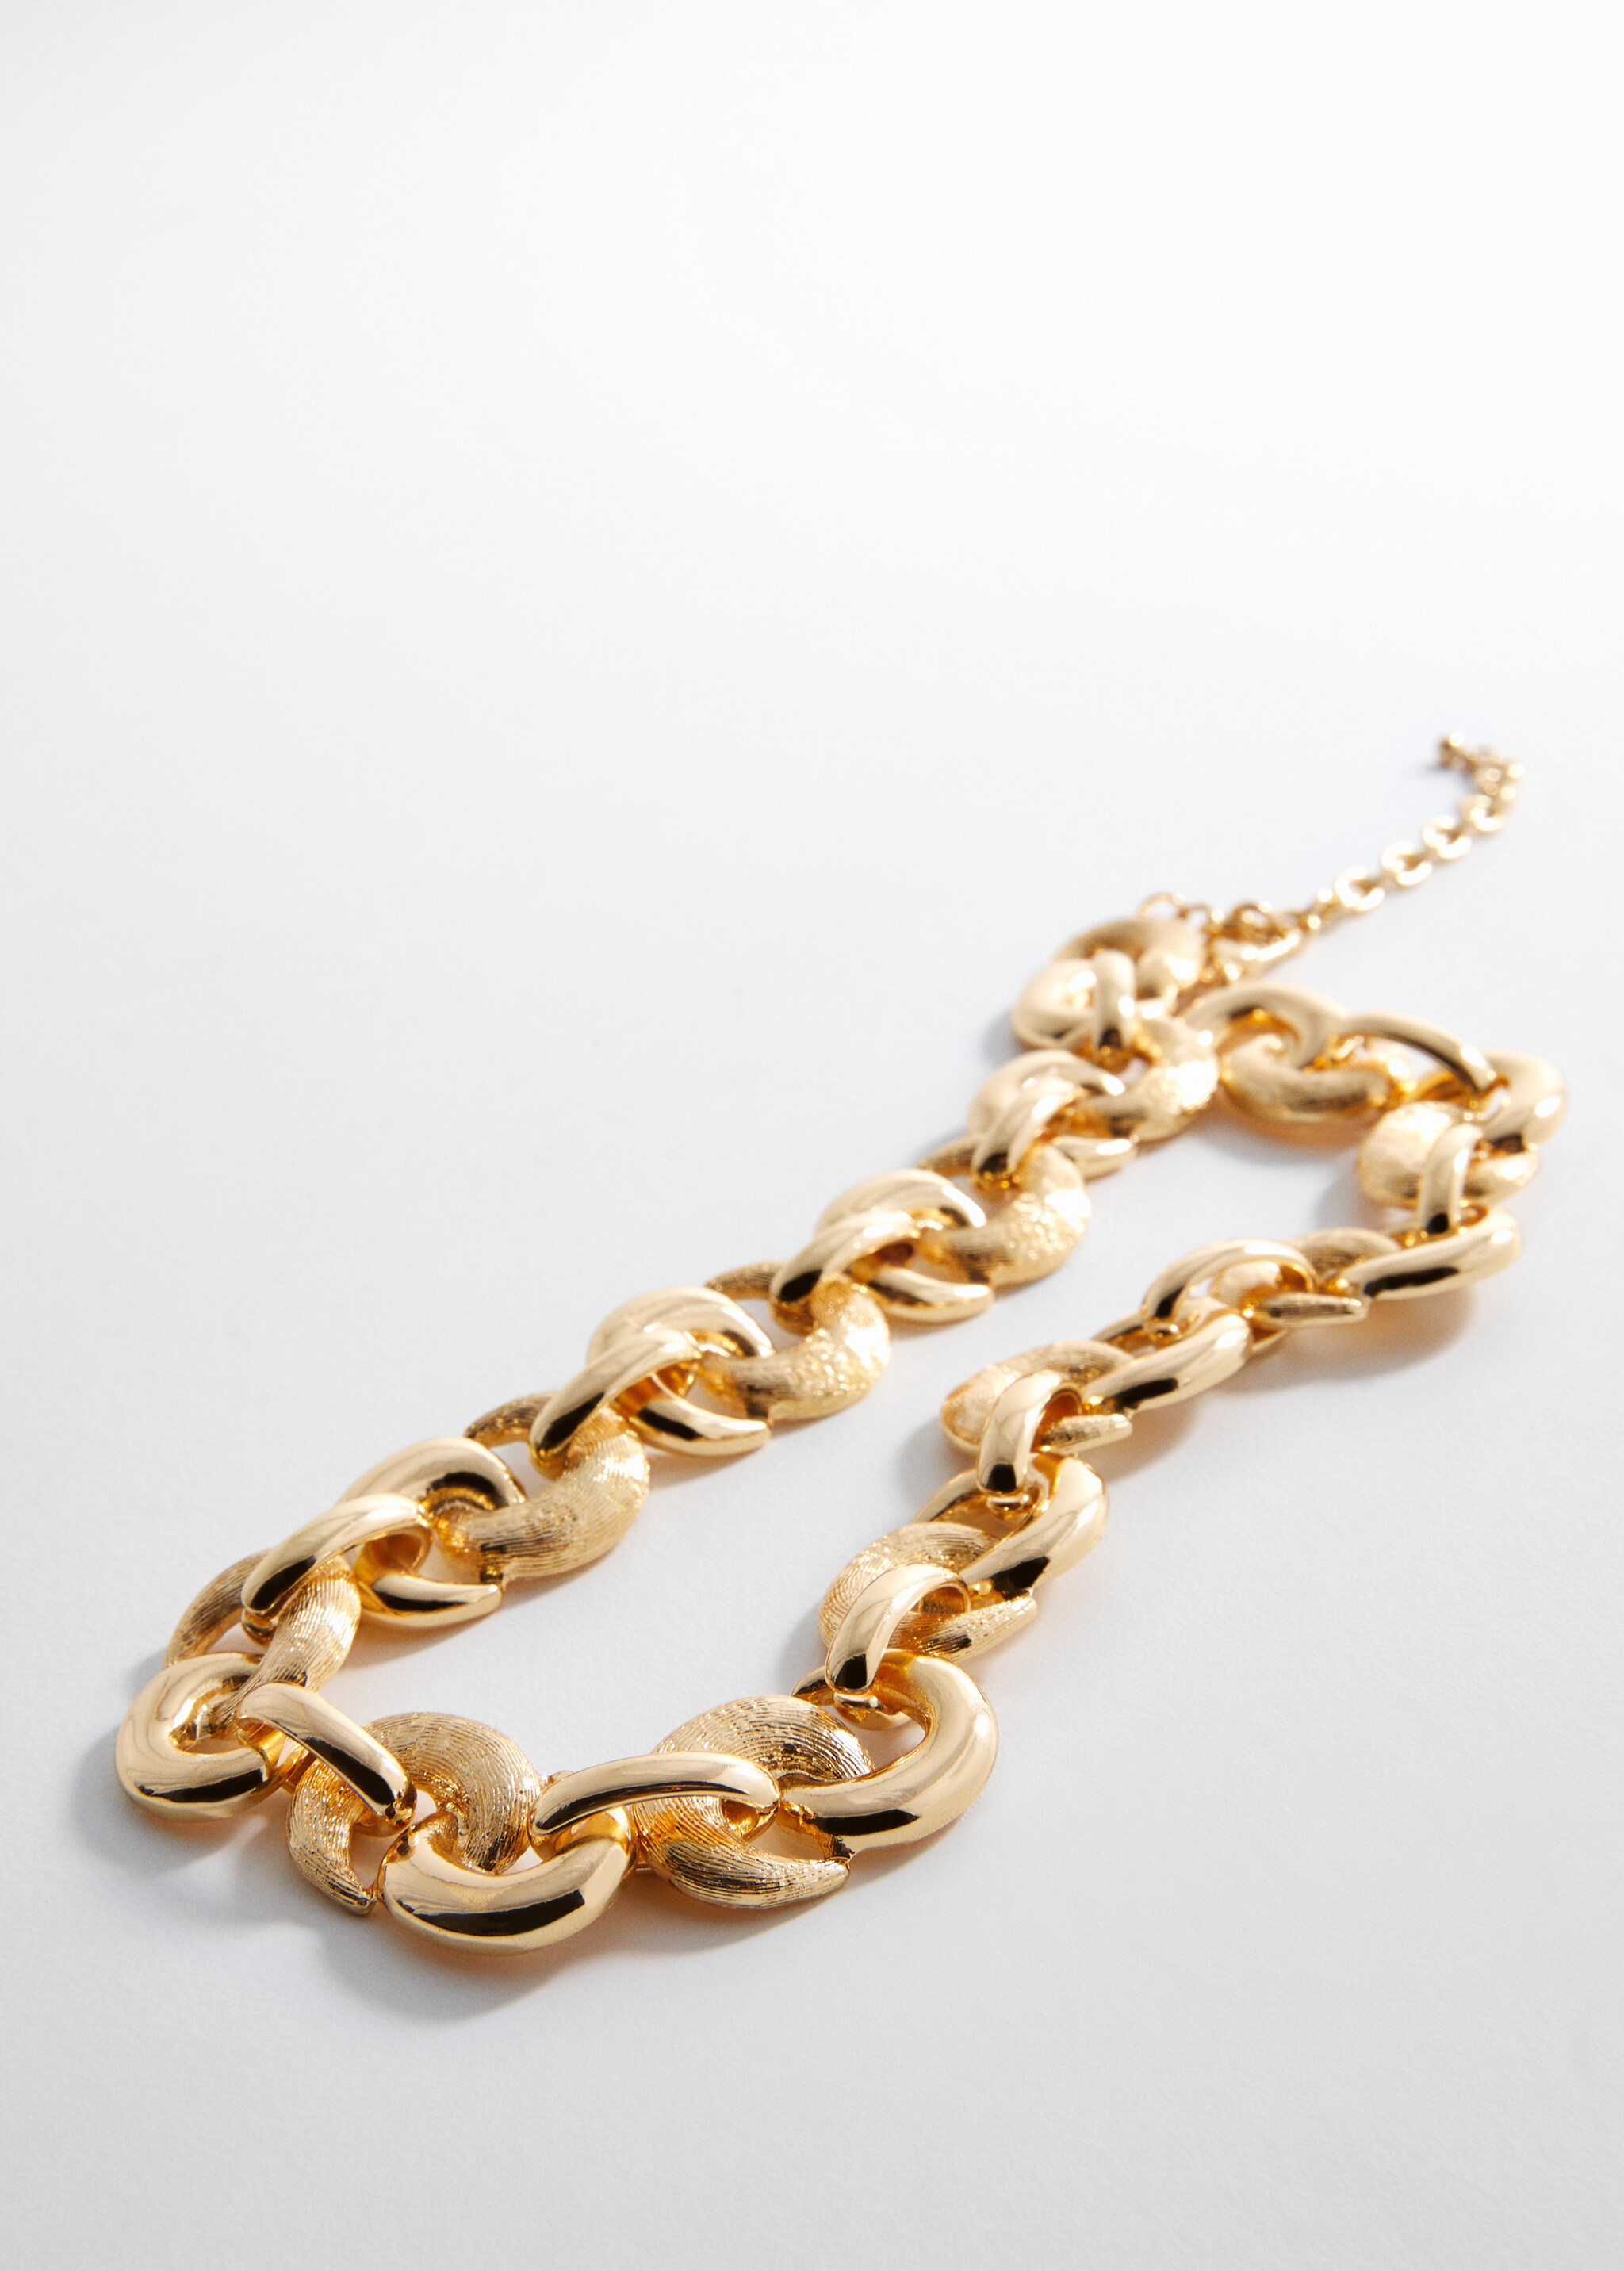 Textured chain necklace - Medium plane